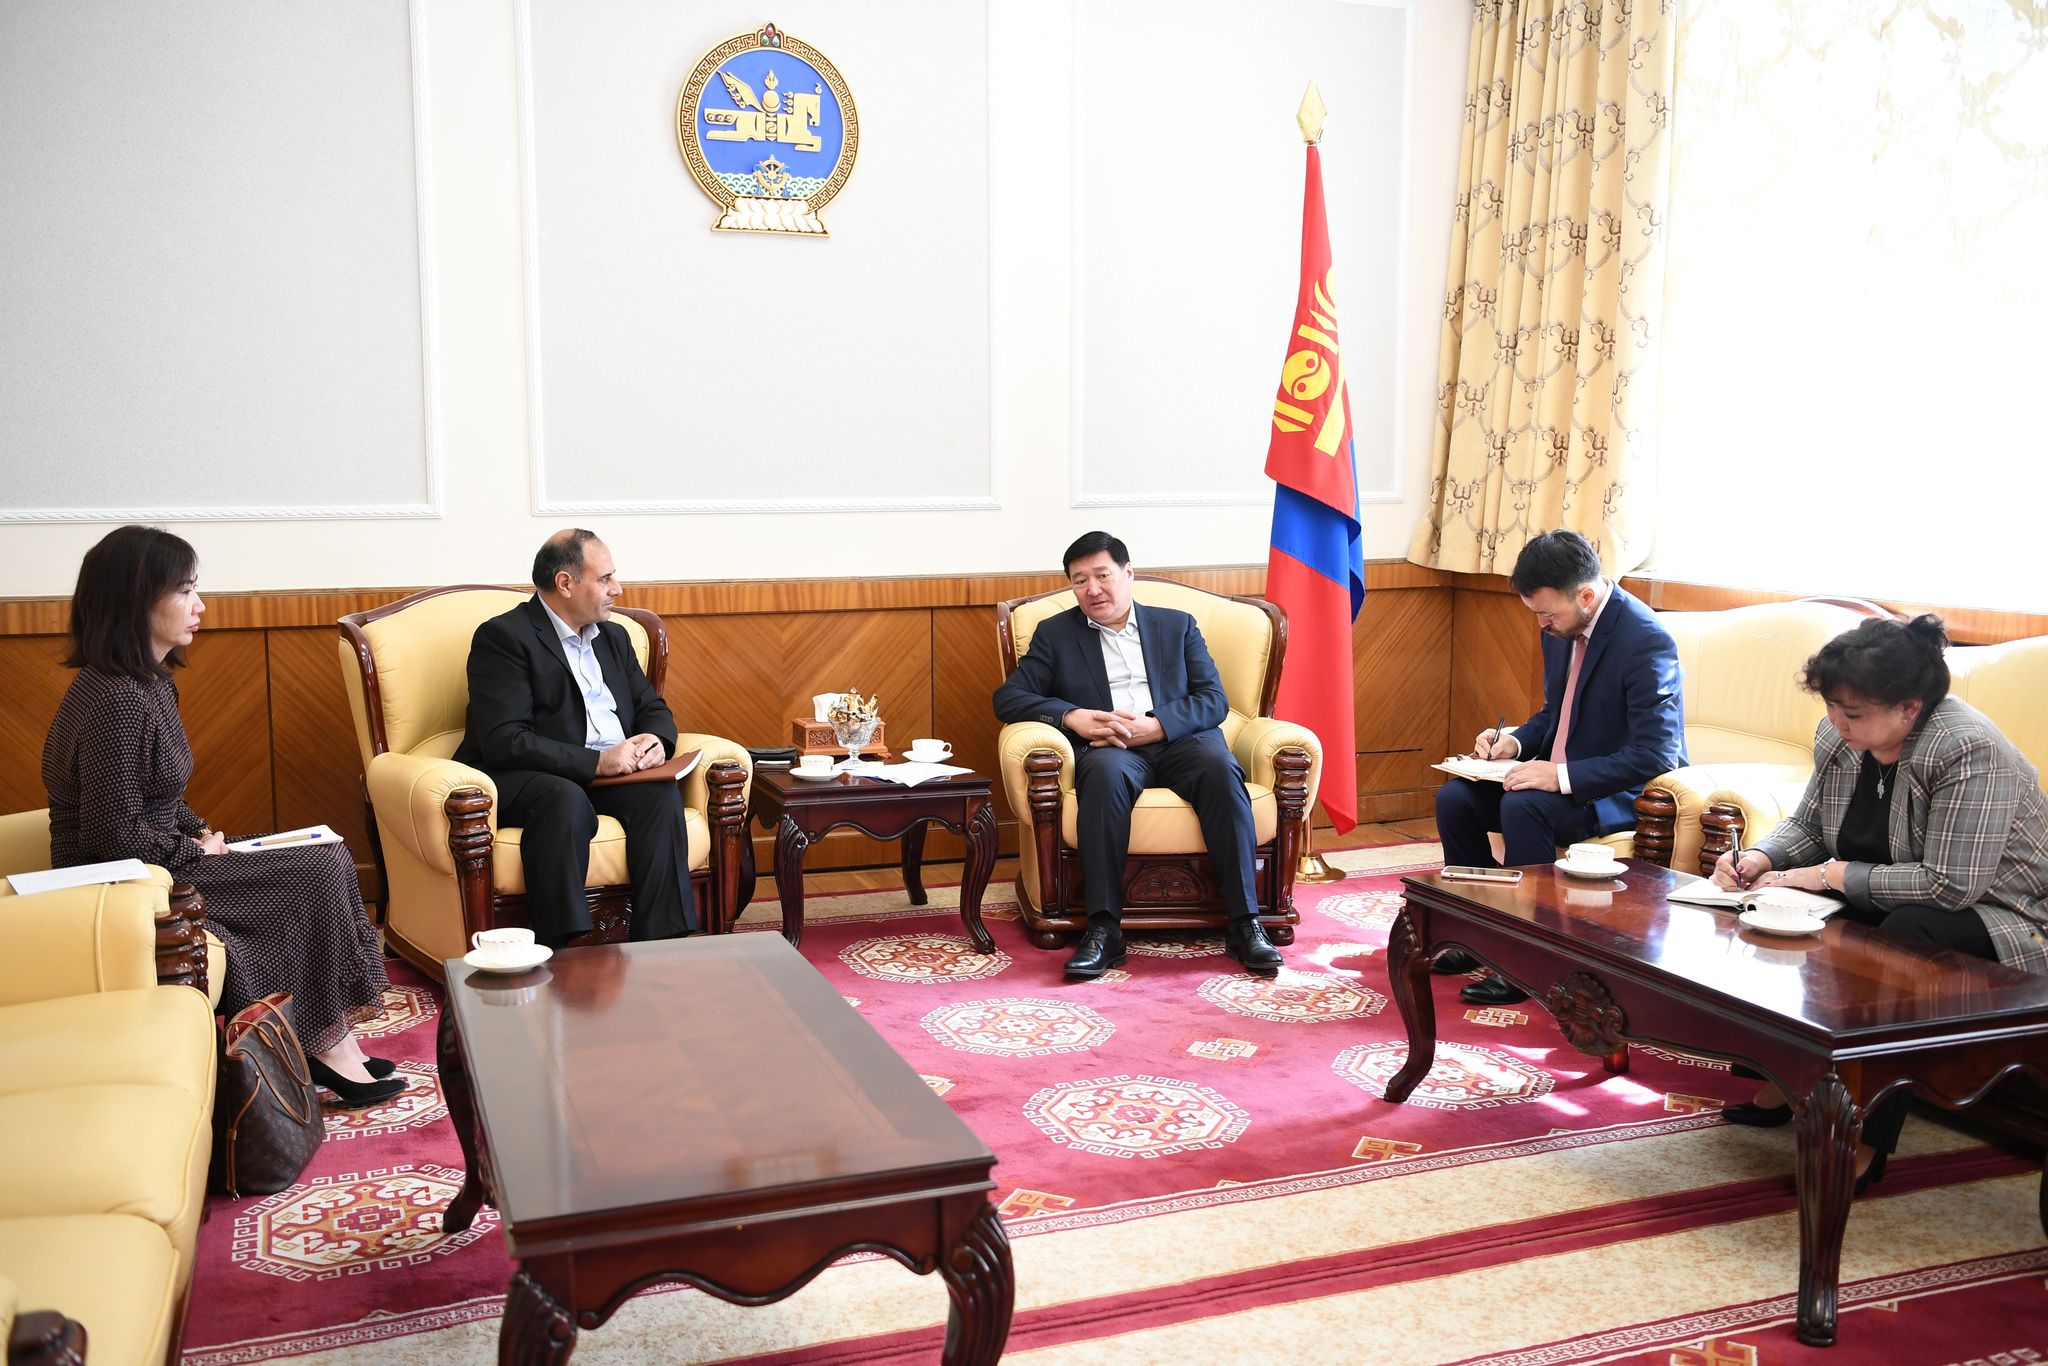 УИХ-ын гишүүн С.Чинзориг НҮБ-ын Хүн амын сангийн Монгол дахь суурин төлөөлөгч Халид Шарифигтай уулзлаа